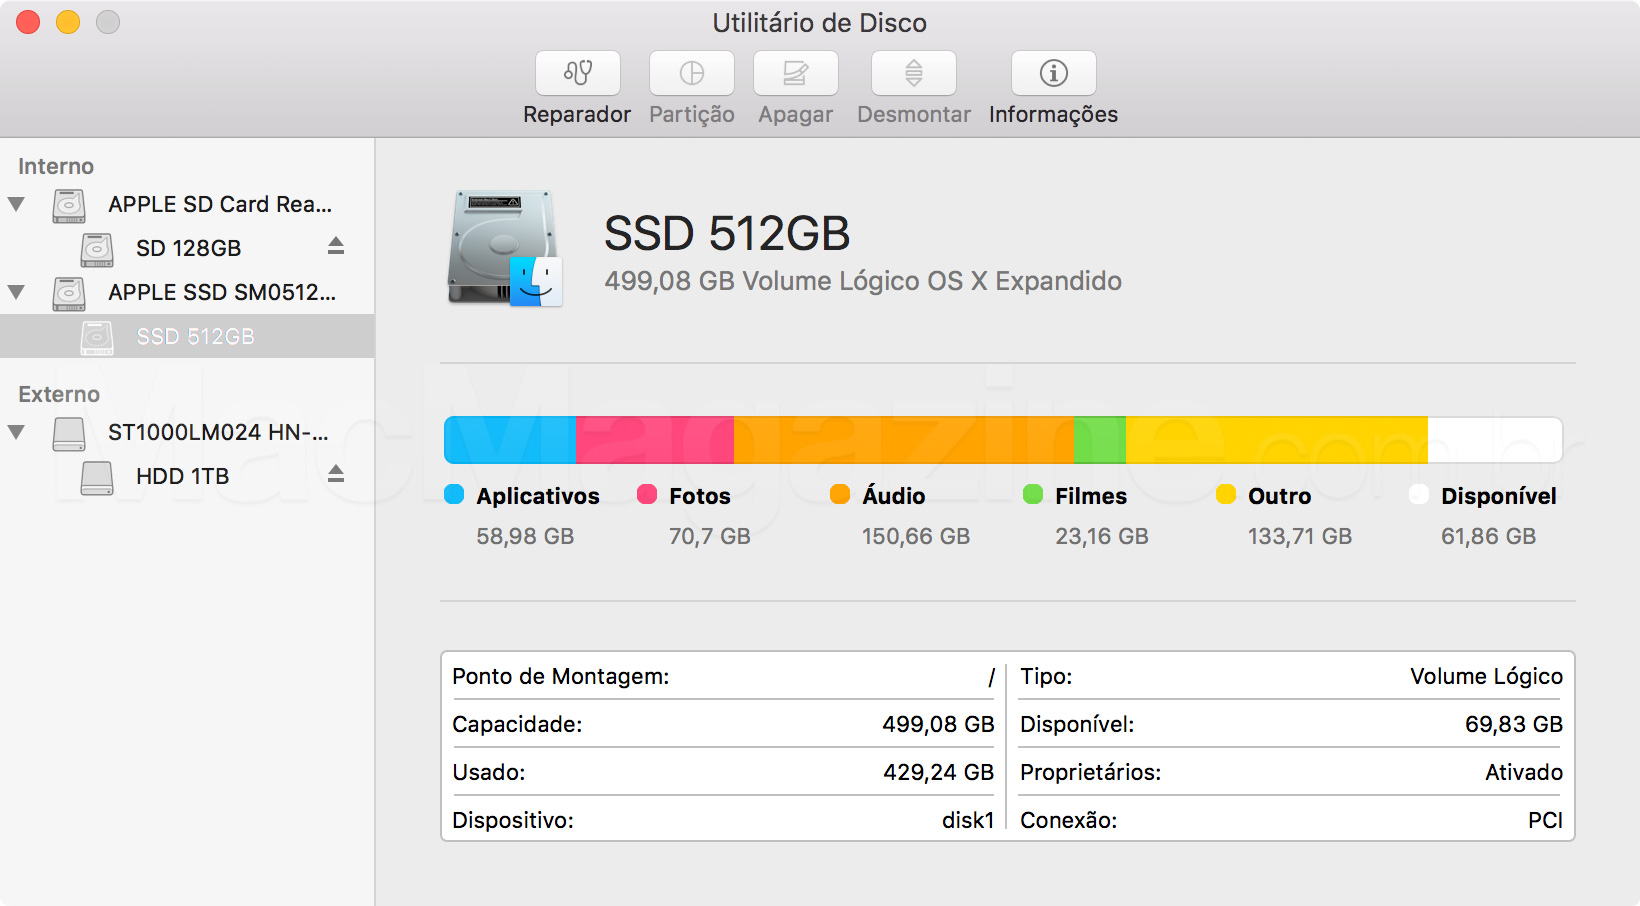 Utilitas Disk OS X